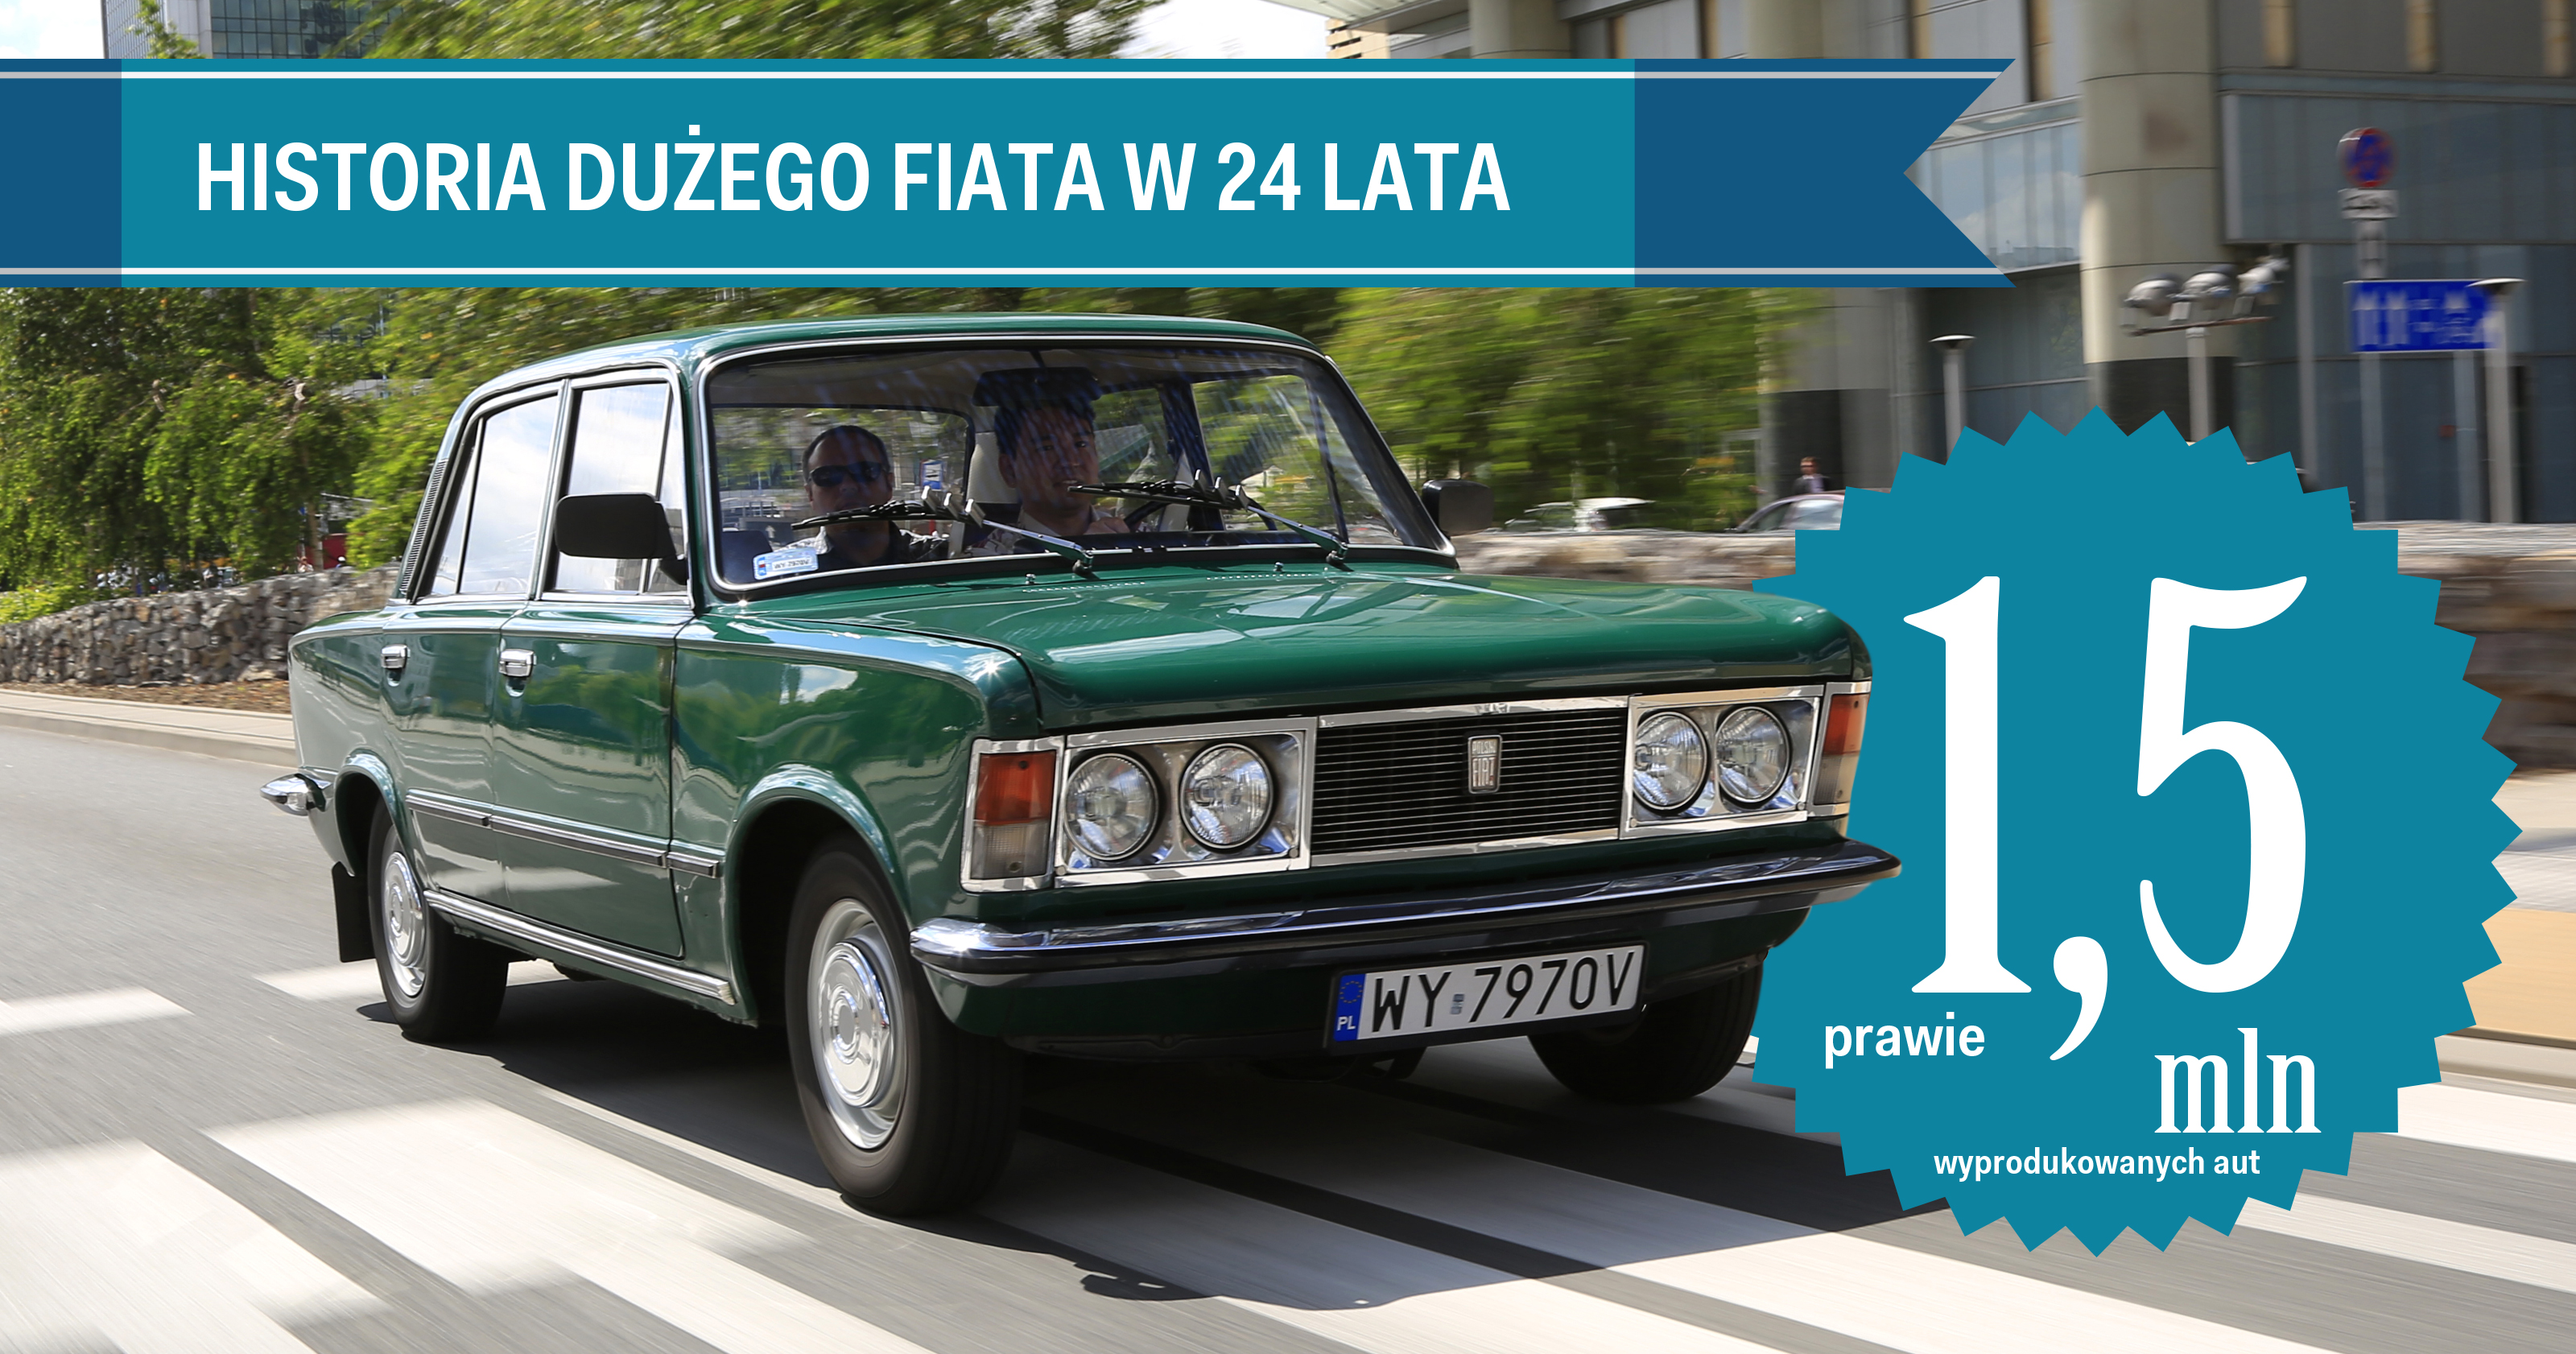 Polski Fiat 125p Duży Fiat historia polskiej motoryzacji